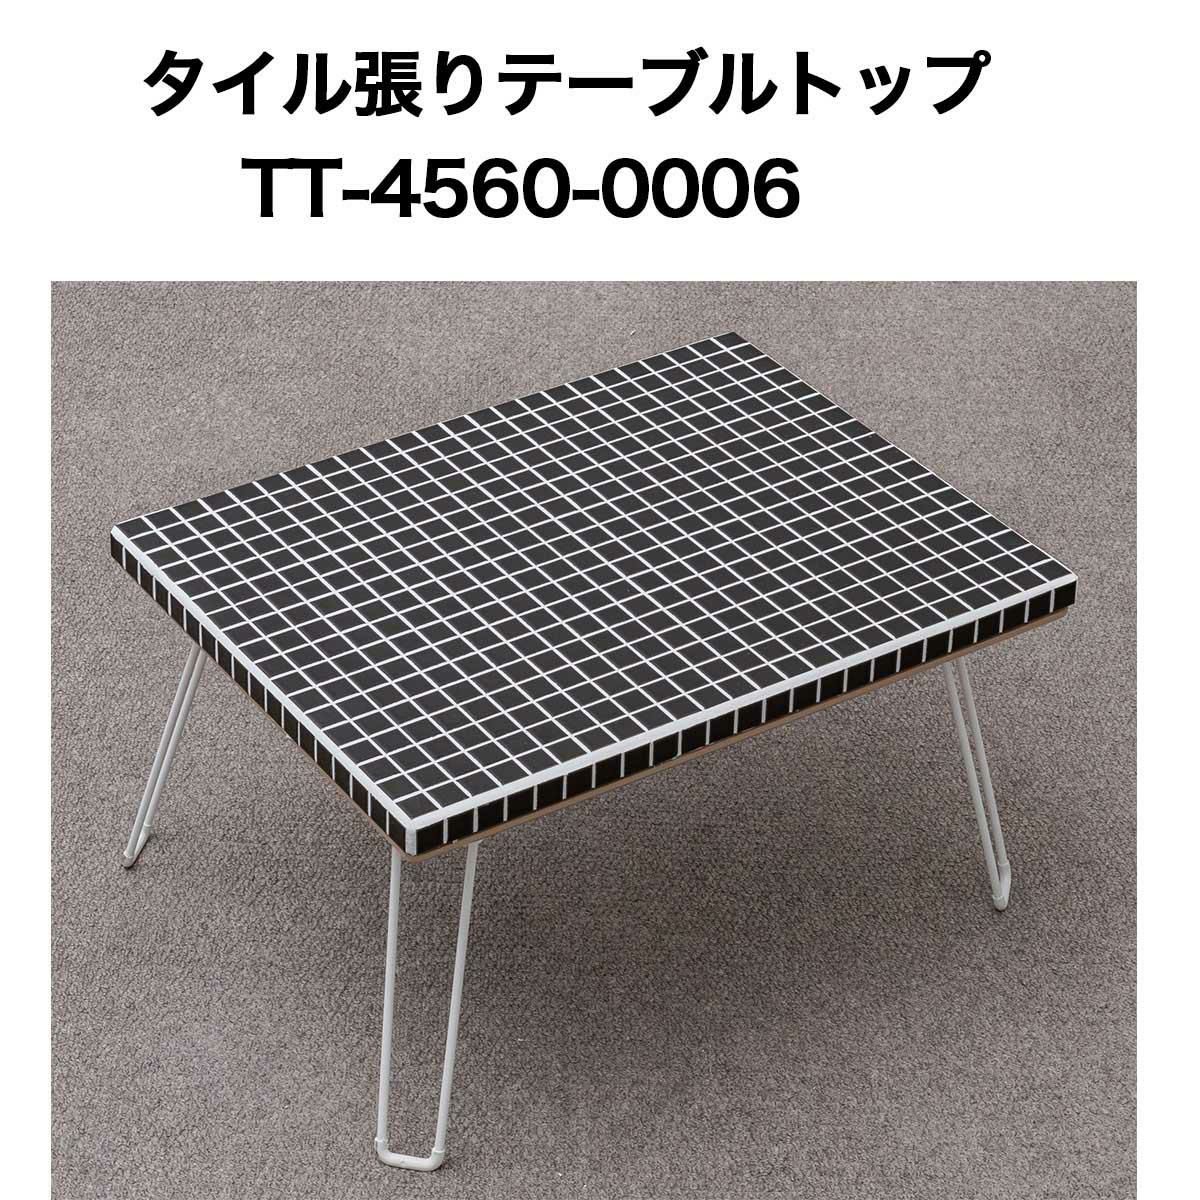 タイル張テーブルトップ4560 No0006 テーブルトップ 天板 テーブル天板